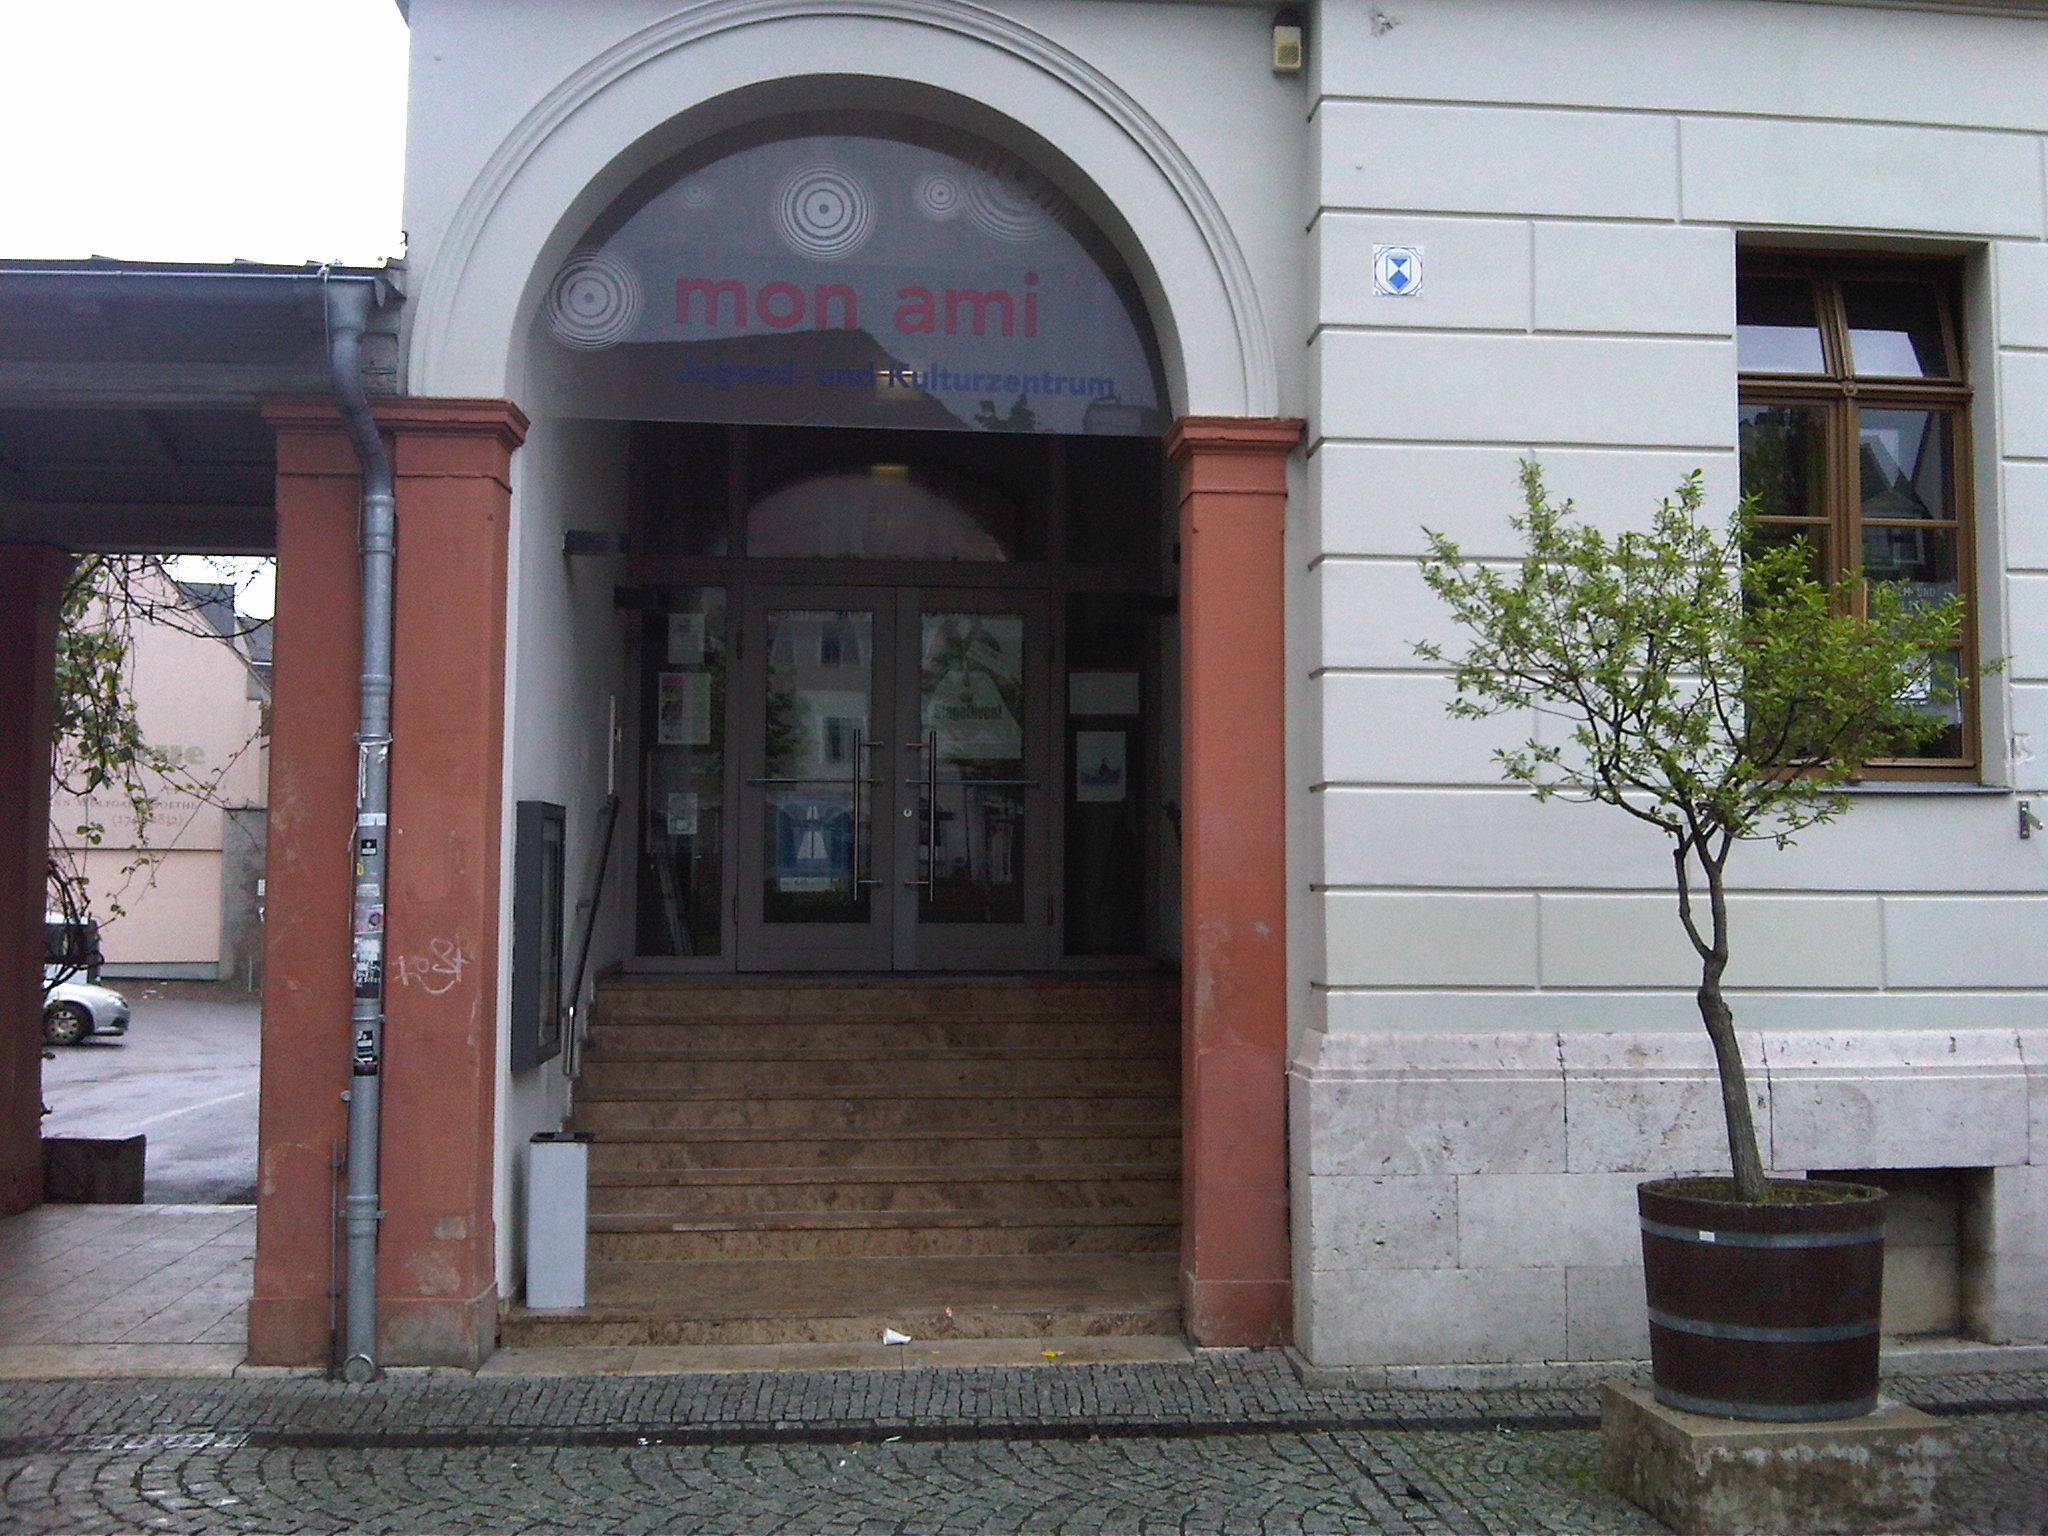 Bild 1 Jugend- und Kulturzentrum mon ami in Weimar